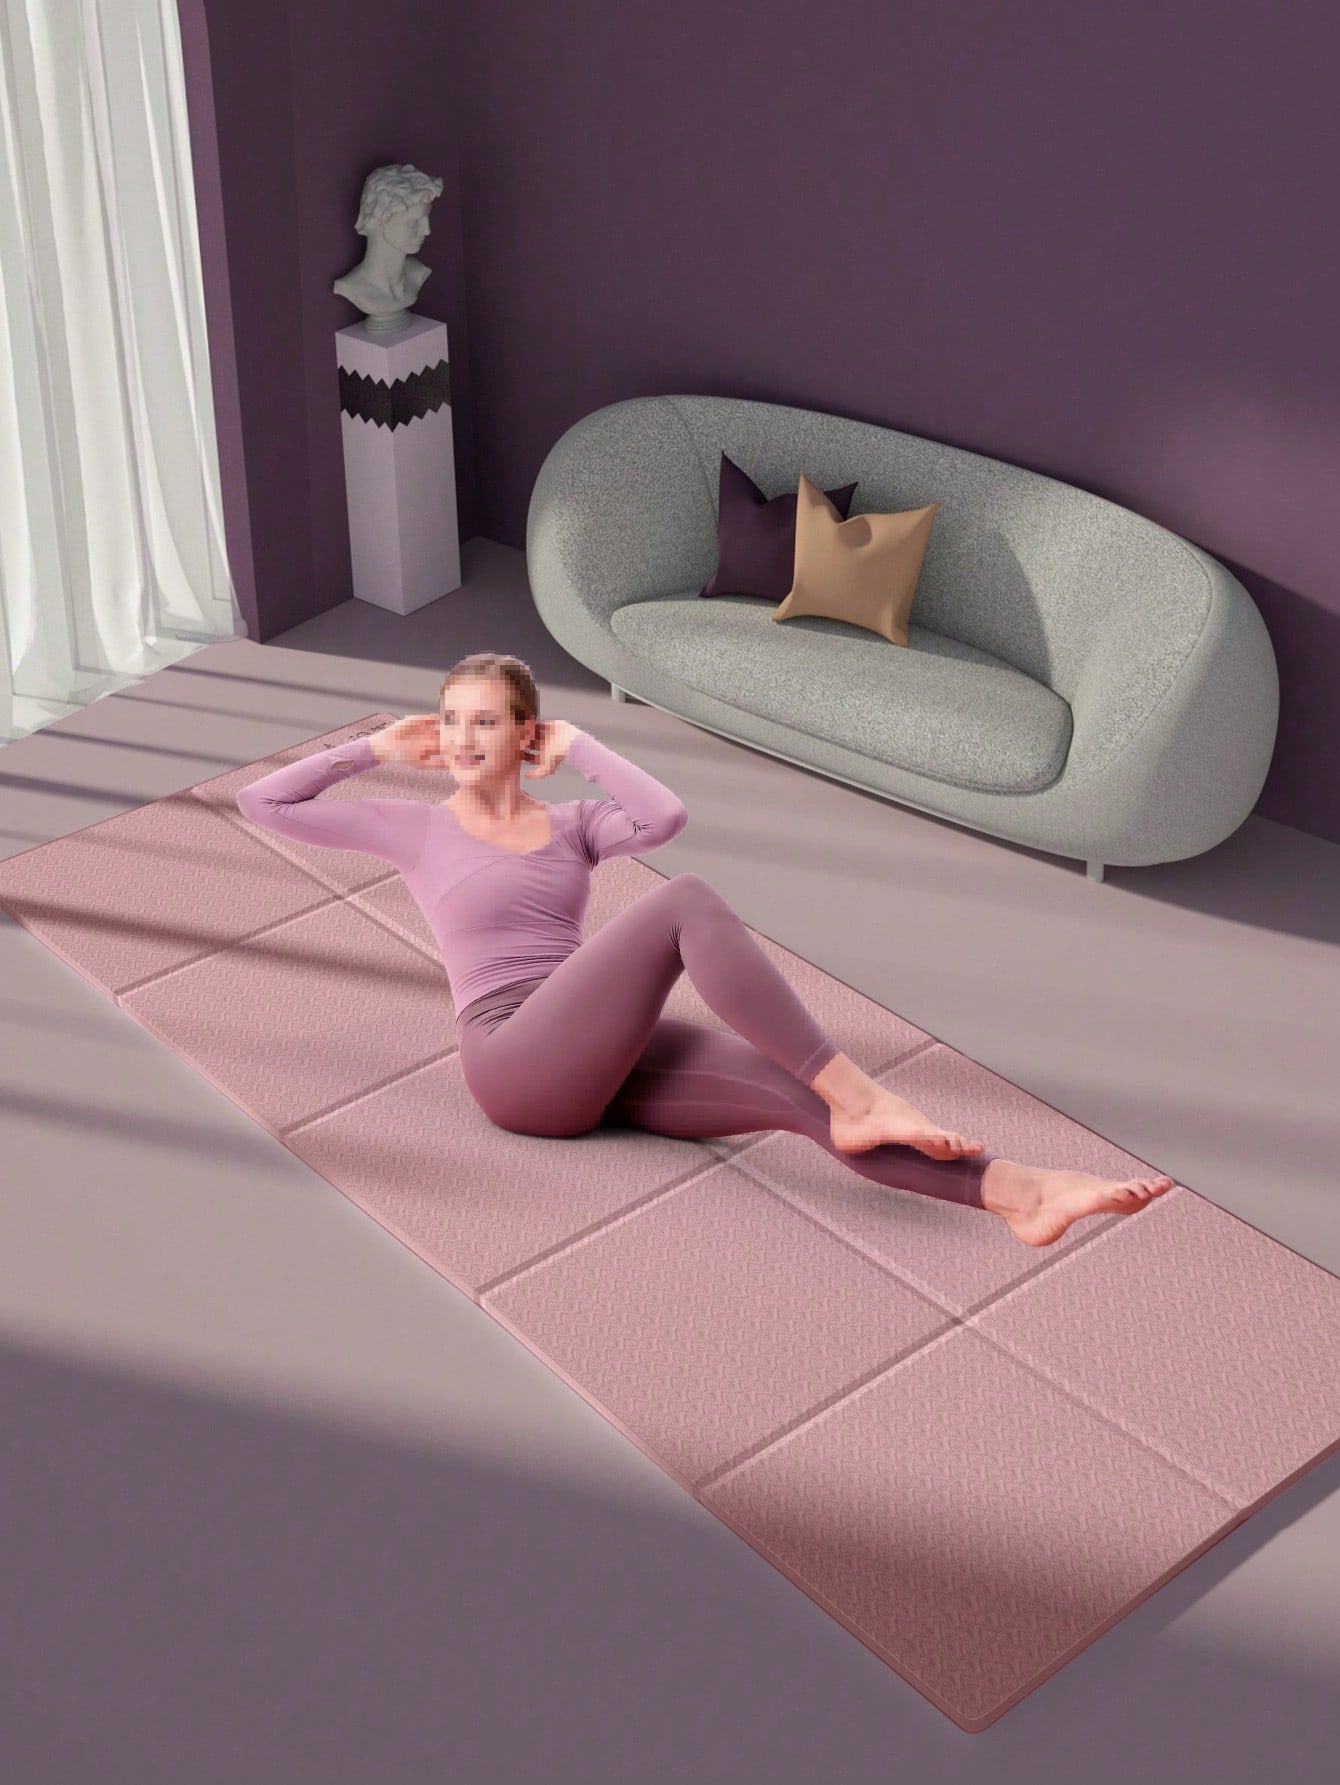 Folding Yoga Mat Kit